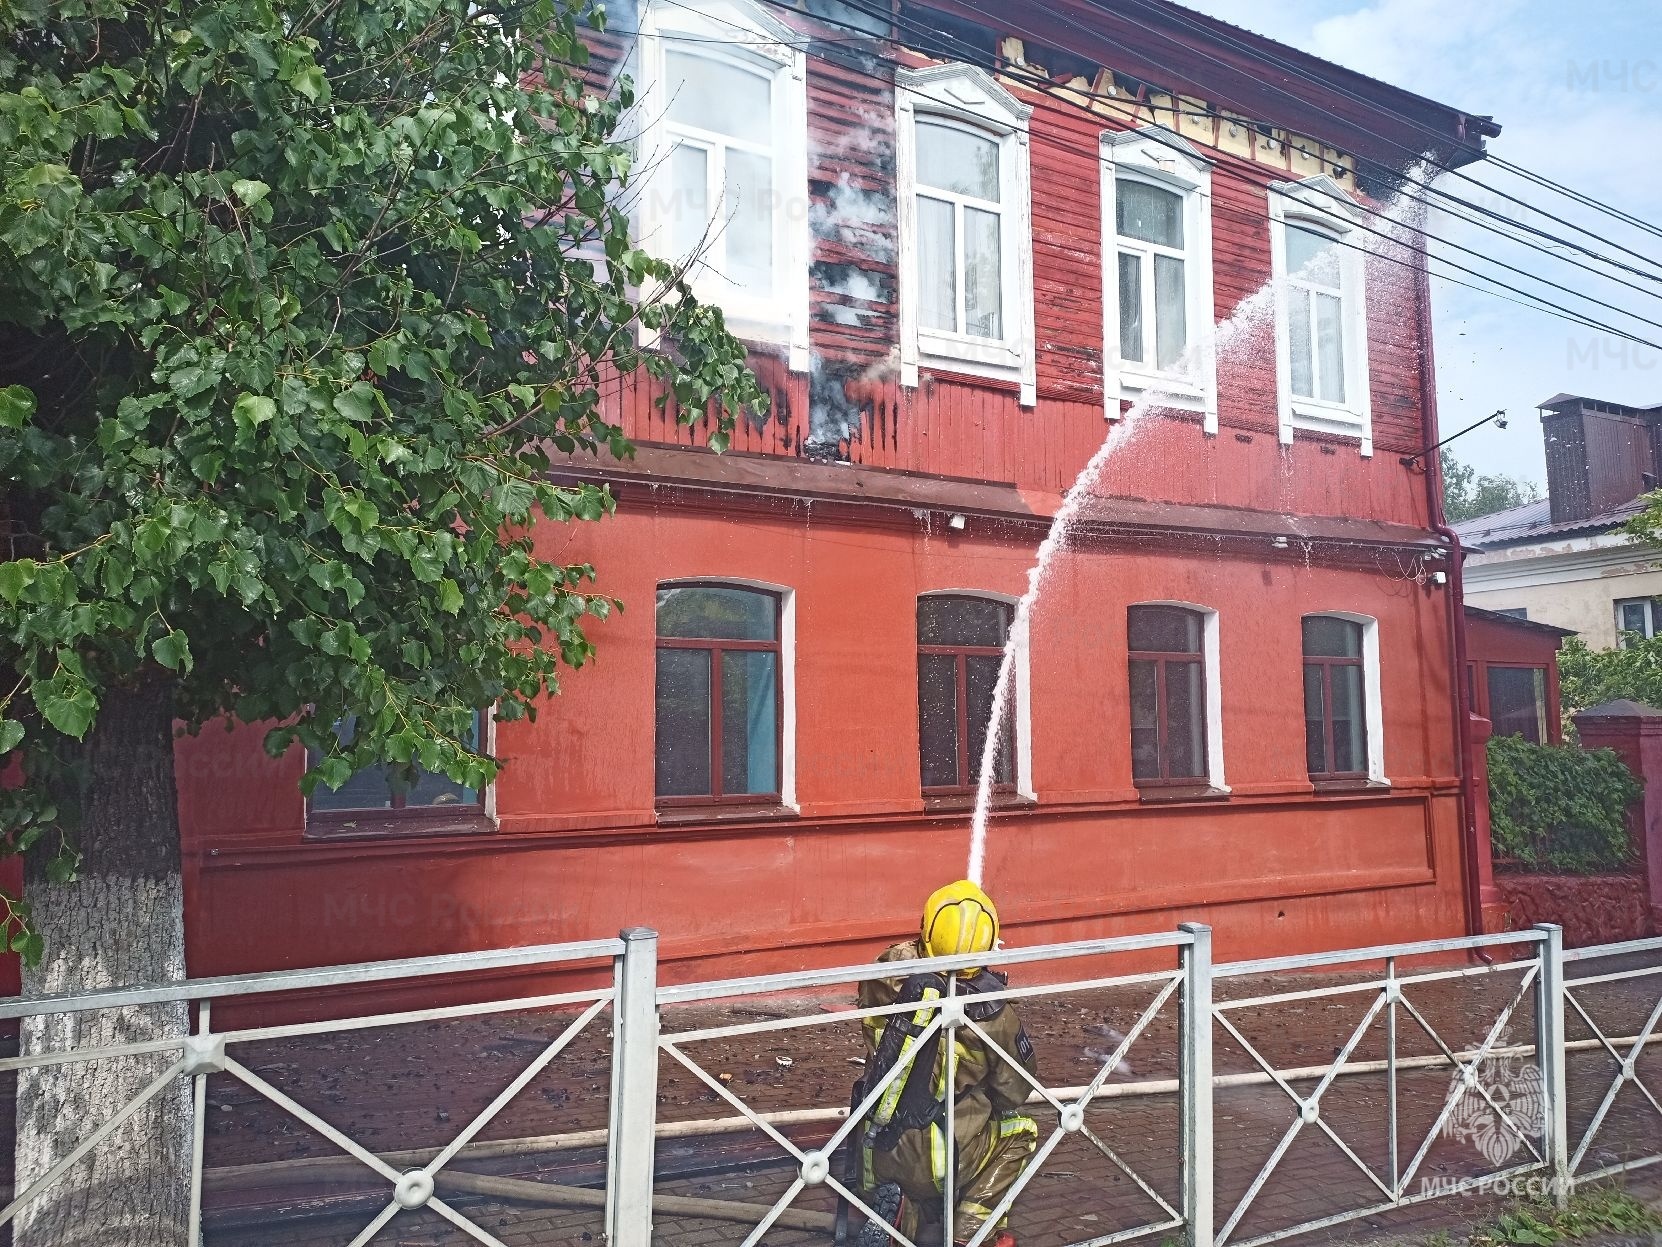 Пожар в брянском кафе Rolling’s на улице Фокина обошёлся без пострадавших